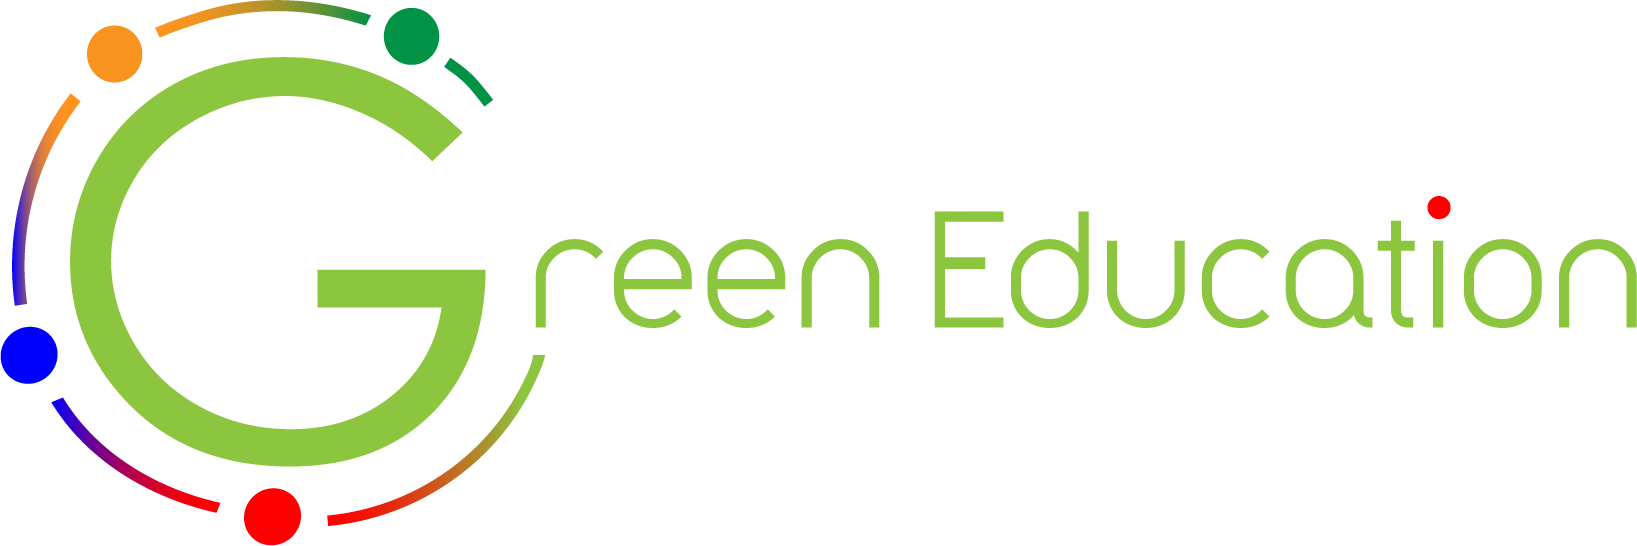 Risultati immagini per green education piemonte